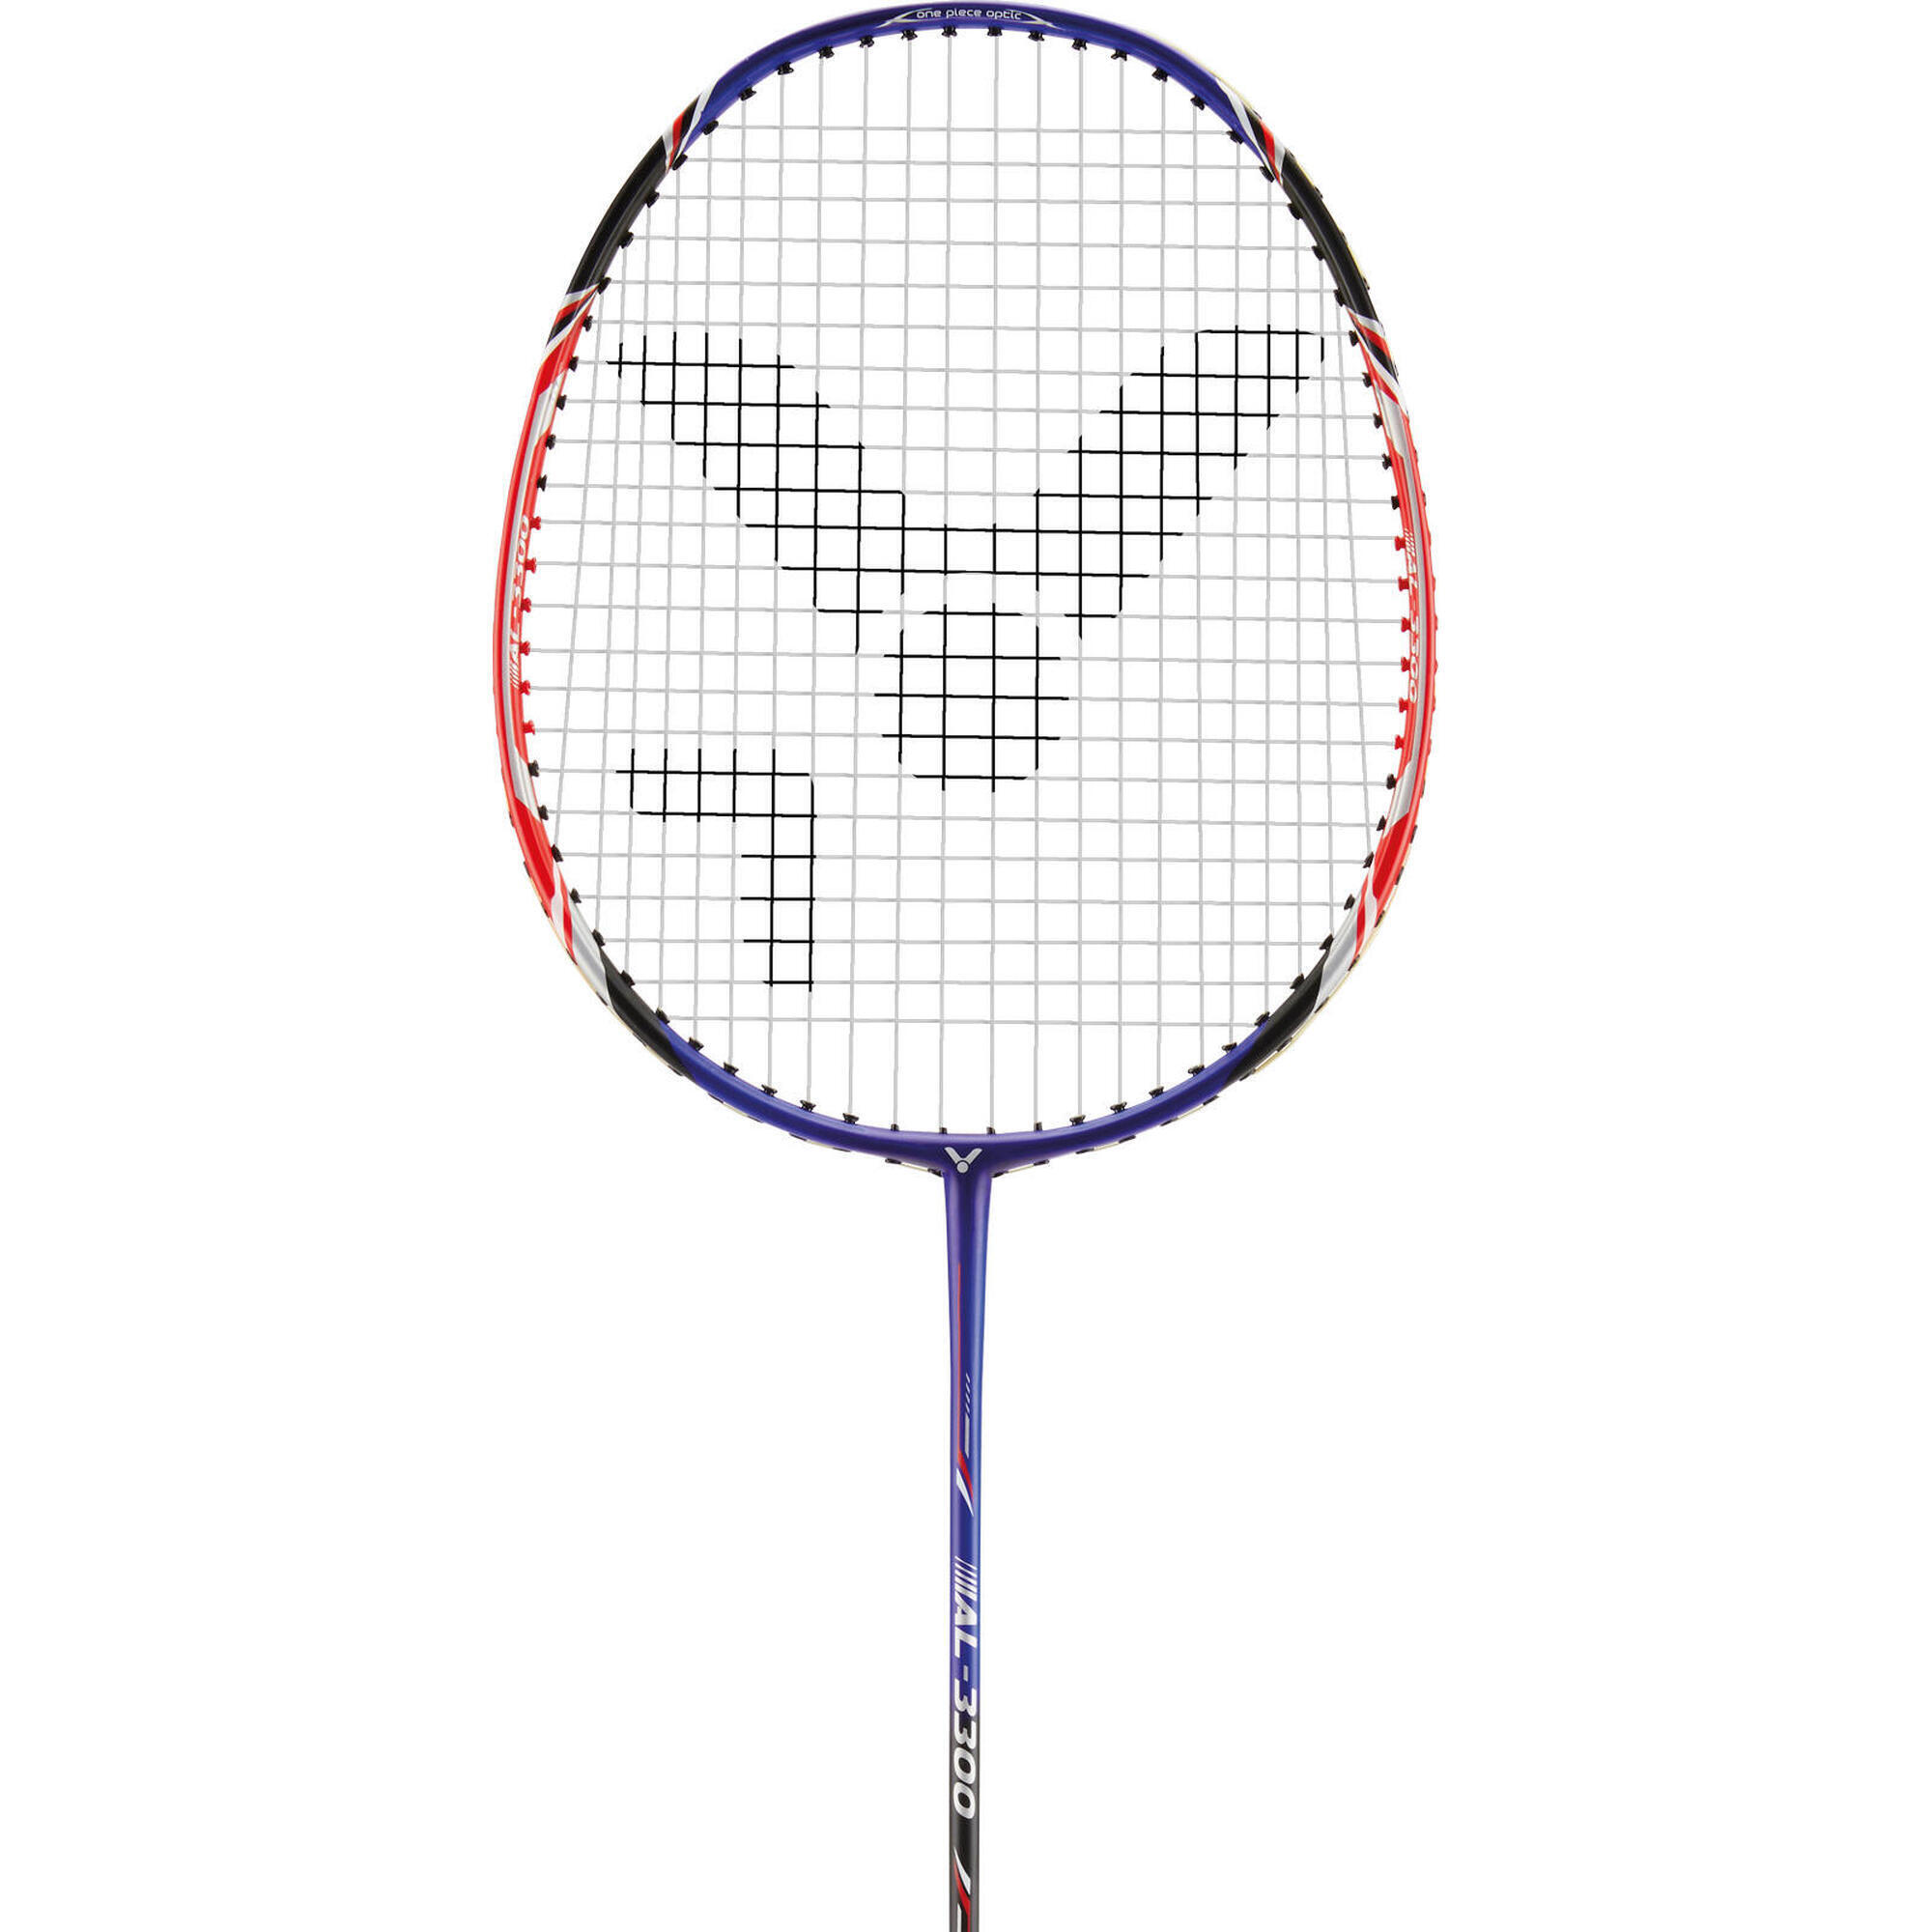 AL-3300 Badminton Racket 1/4